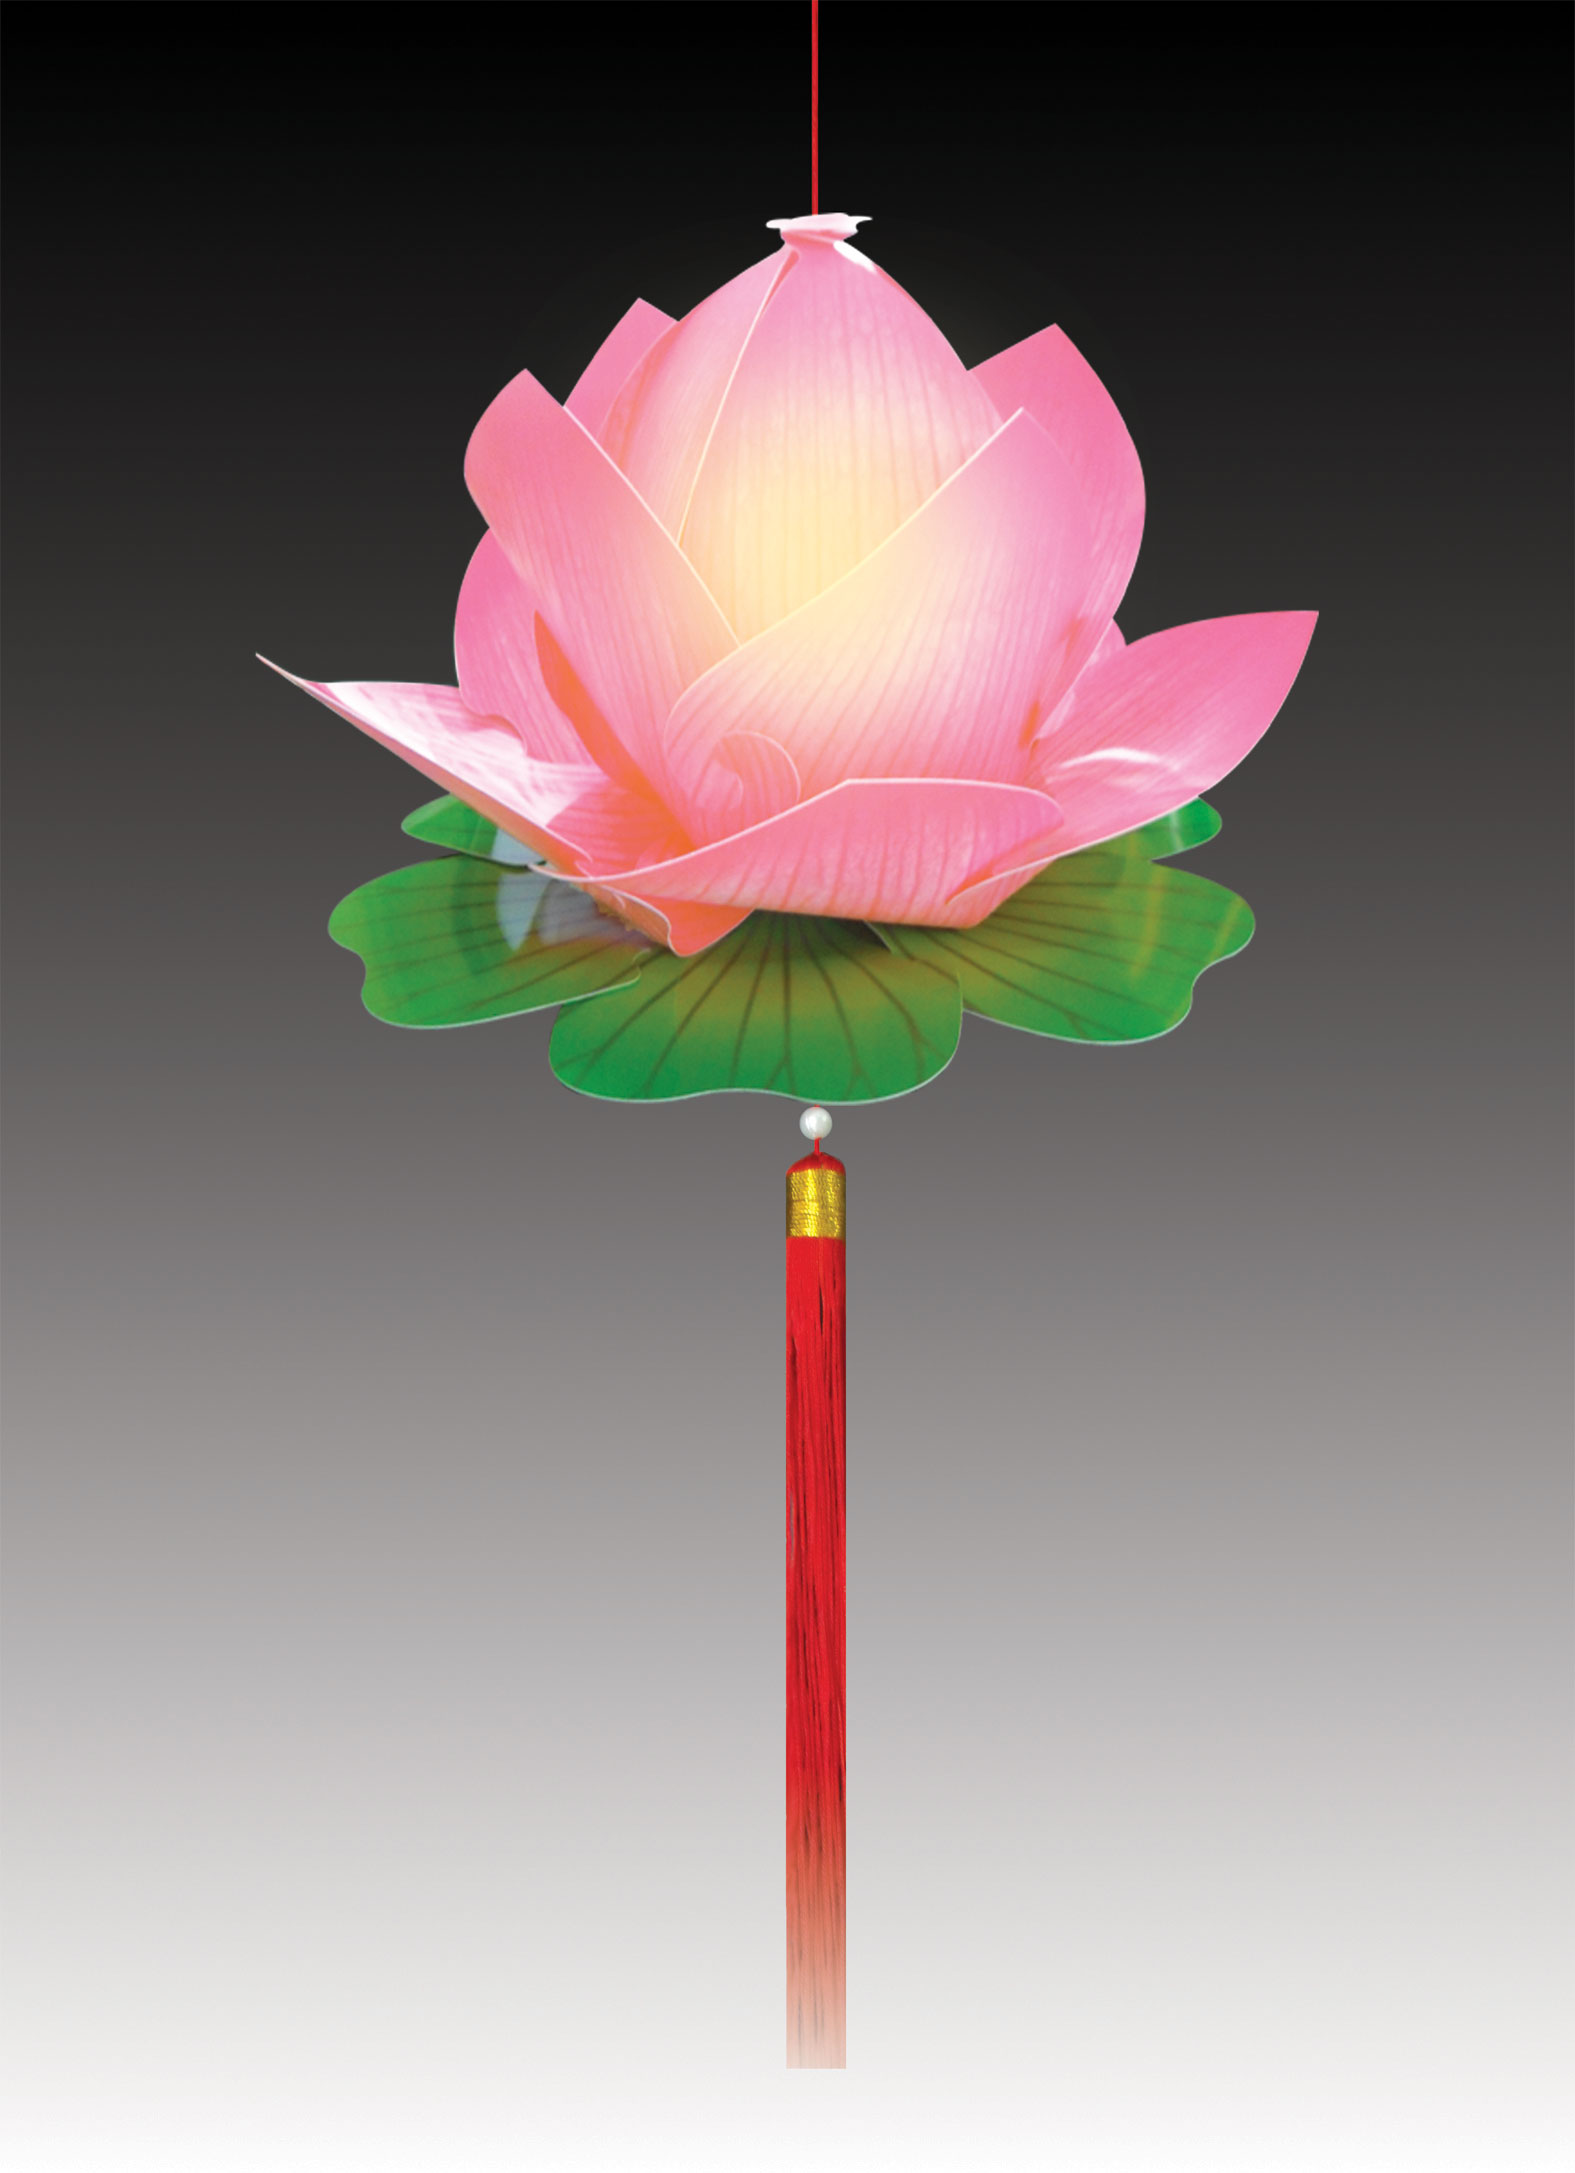 Đèn lồng quốc hoa sen hồng nhạt - Đèn Lồng Minh Hoa - Công Ty TNHH Dịch Vụ Đầu Tư Thương Mại Minh Hoa